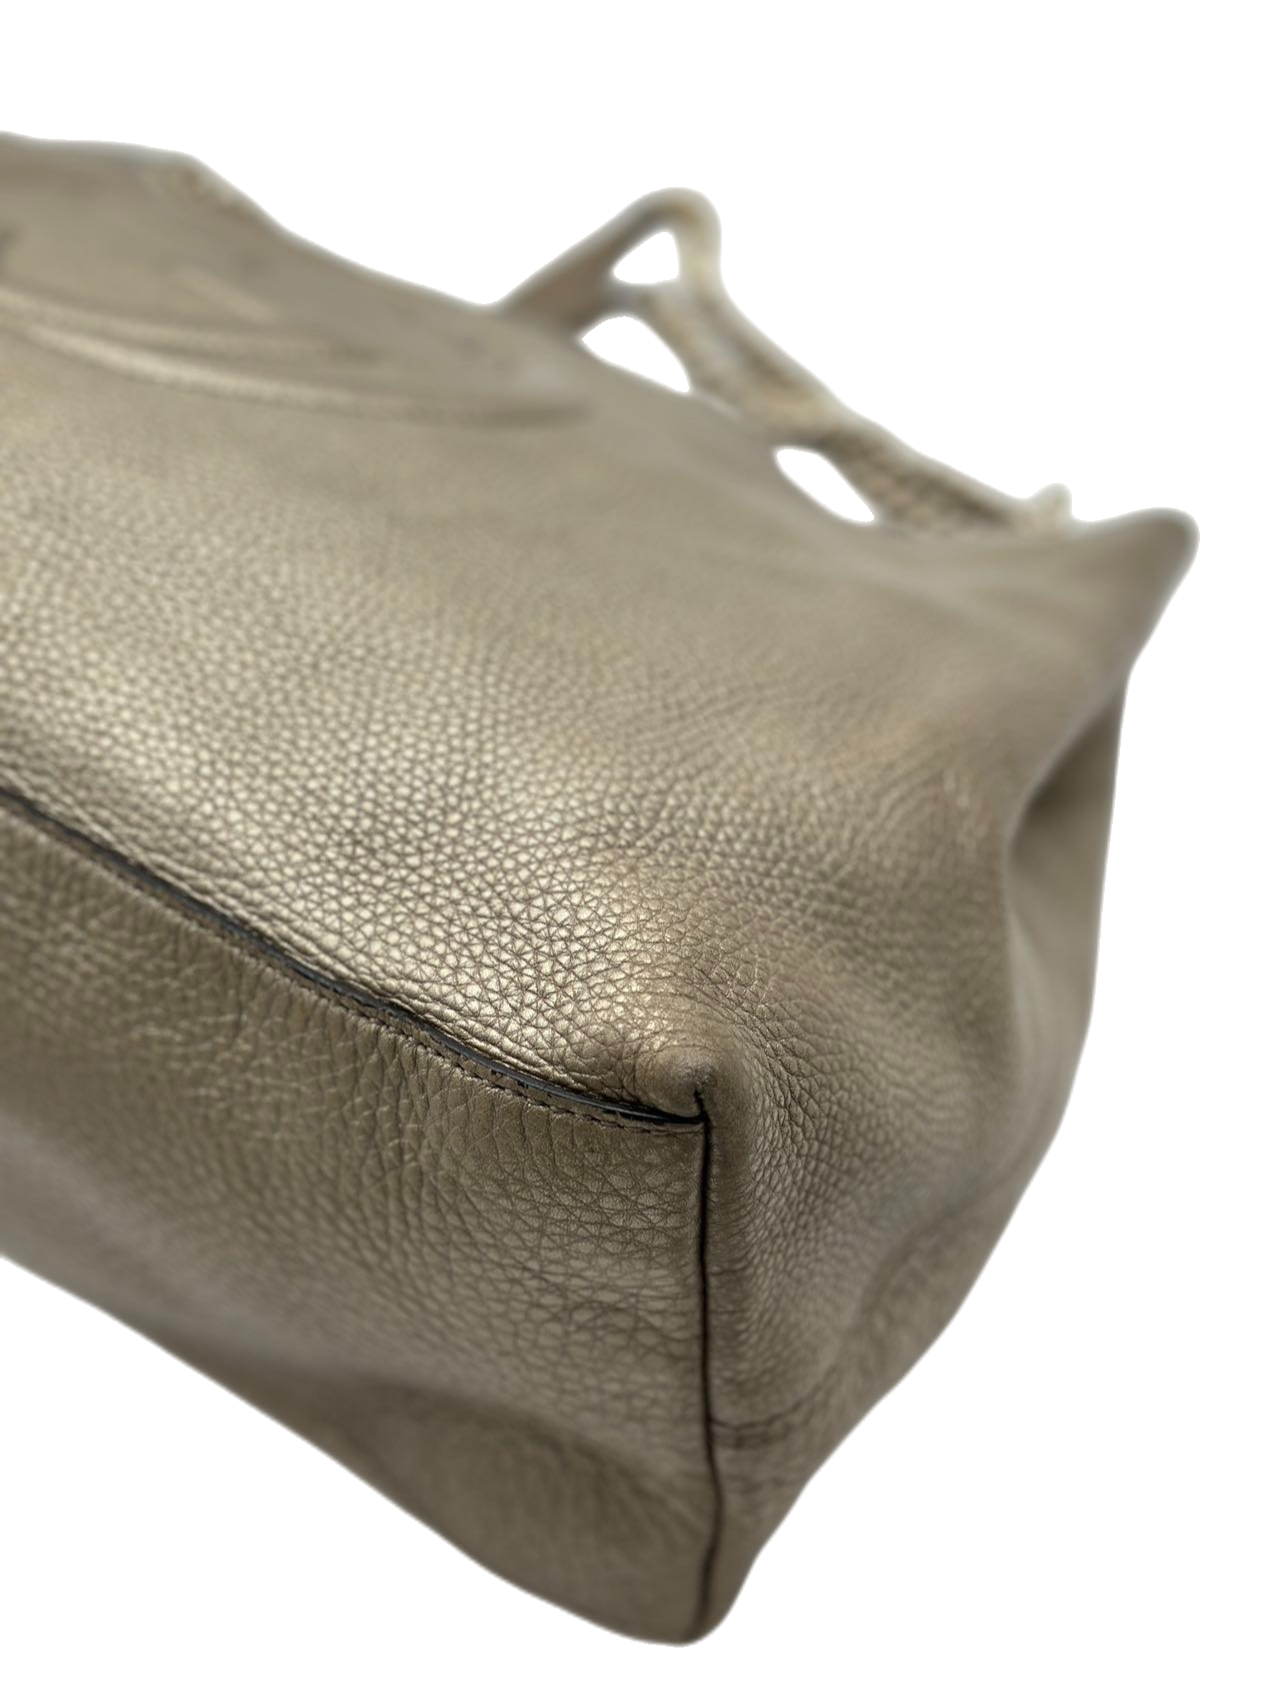 Preloved Gucci GG Logo Large Soho Chain Totes Shoulder Bag